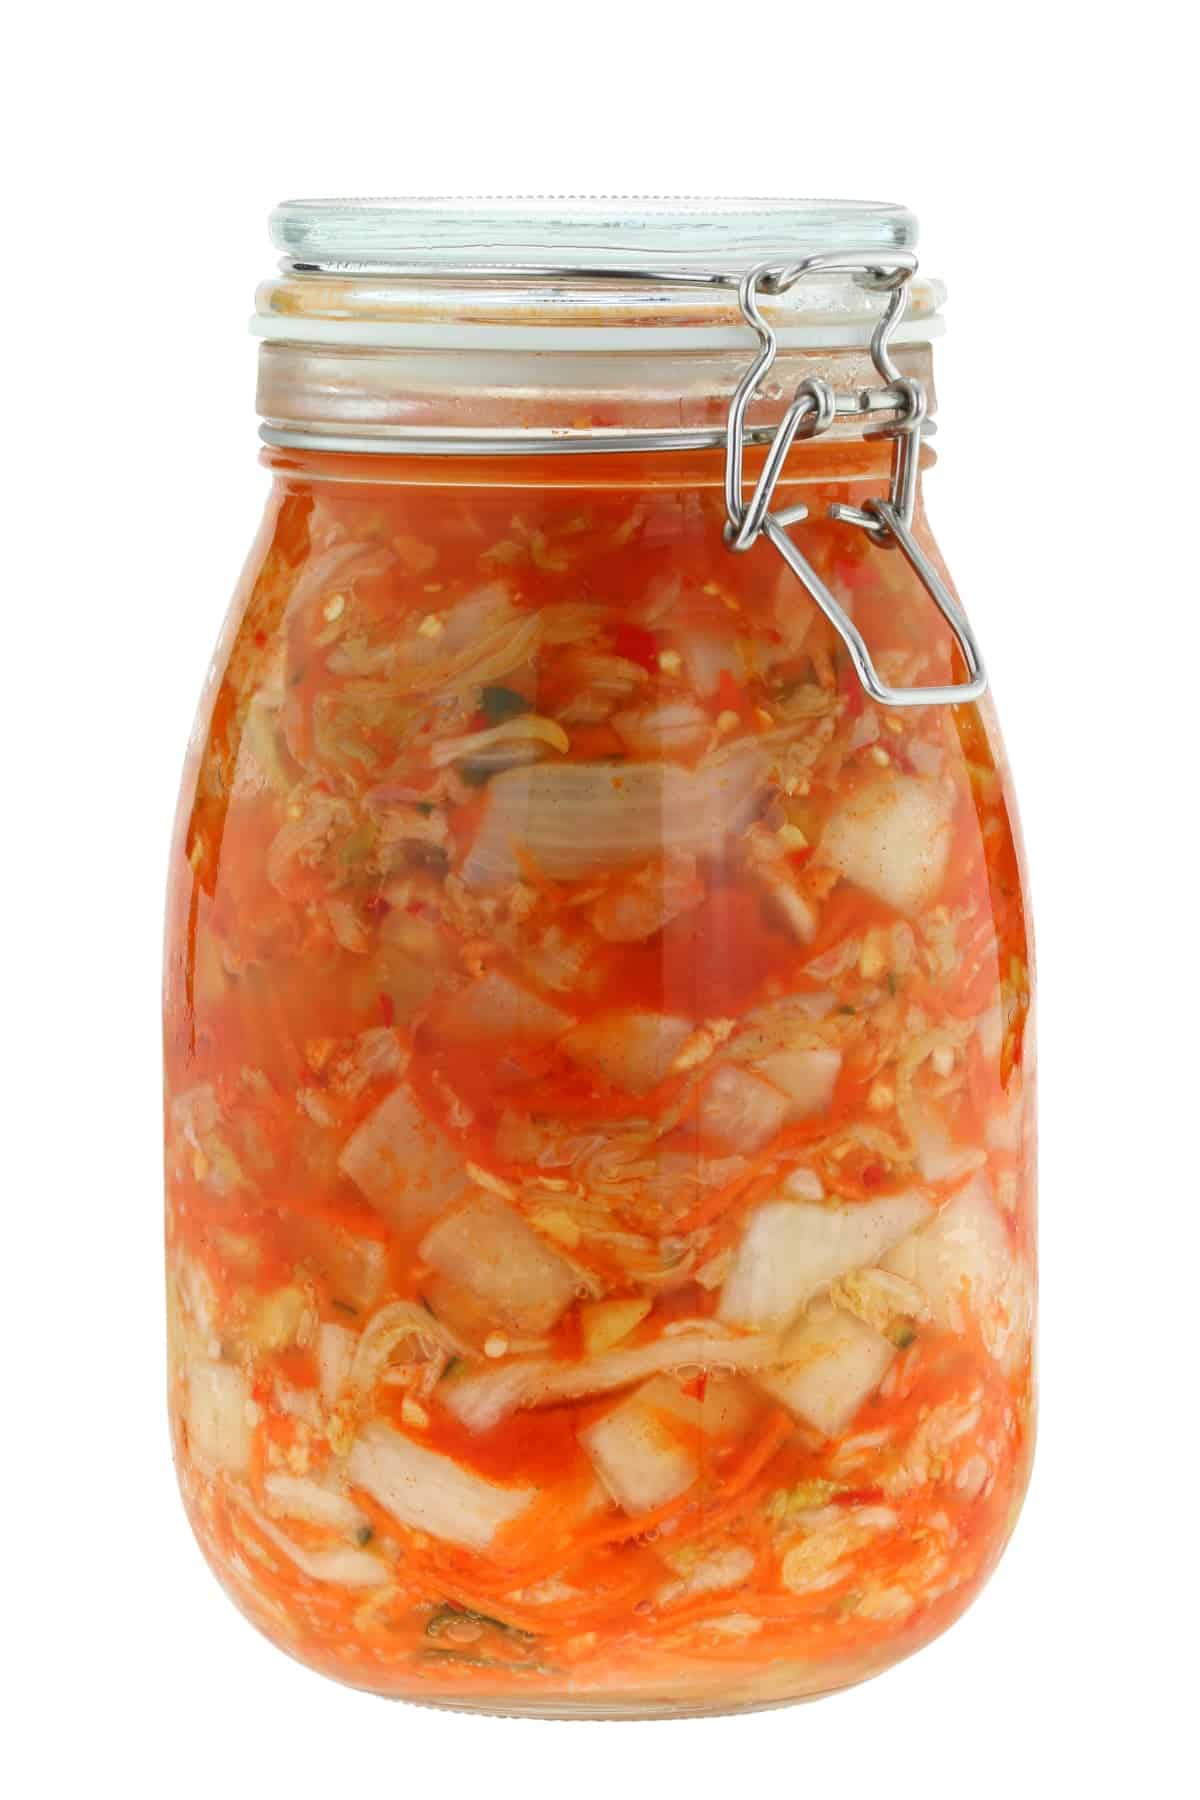 Korean kimchi in sealed glass jar